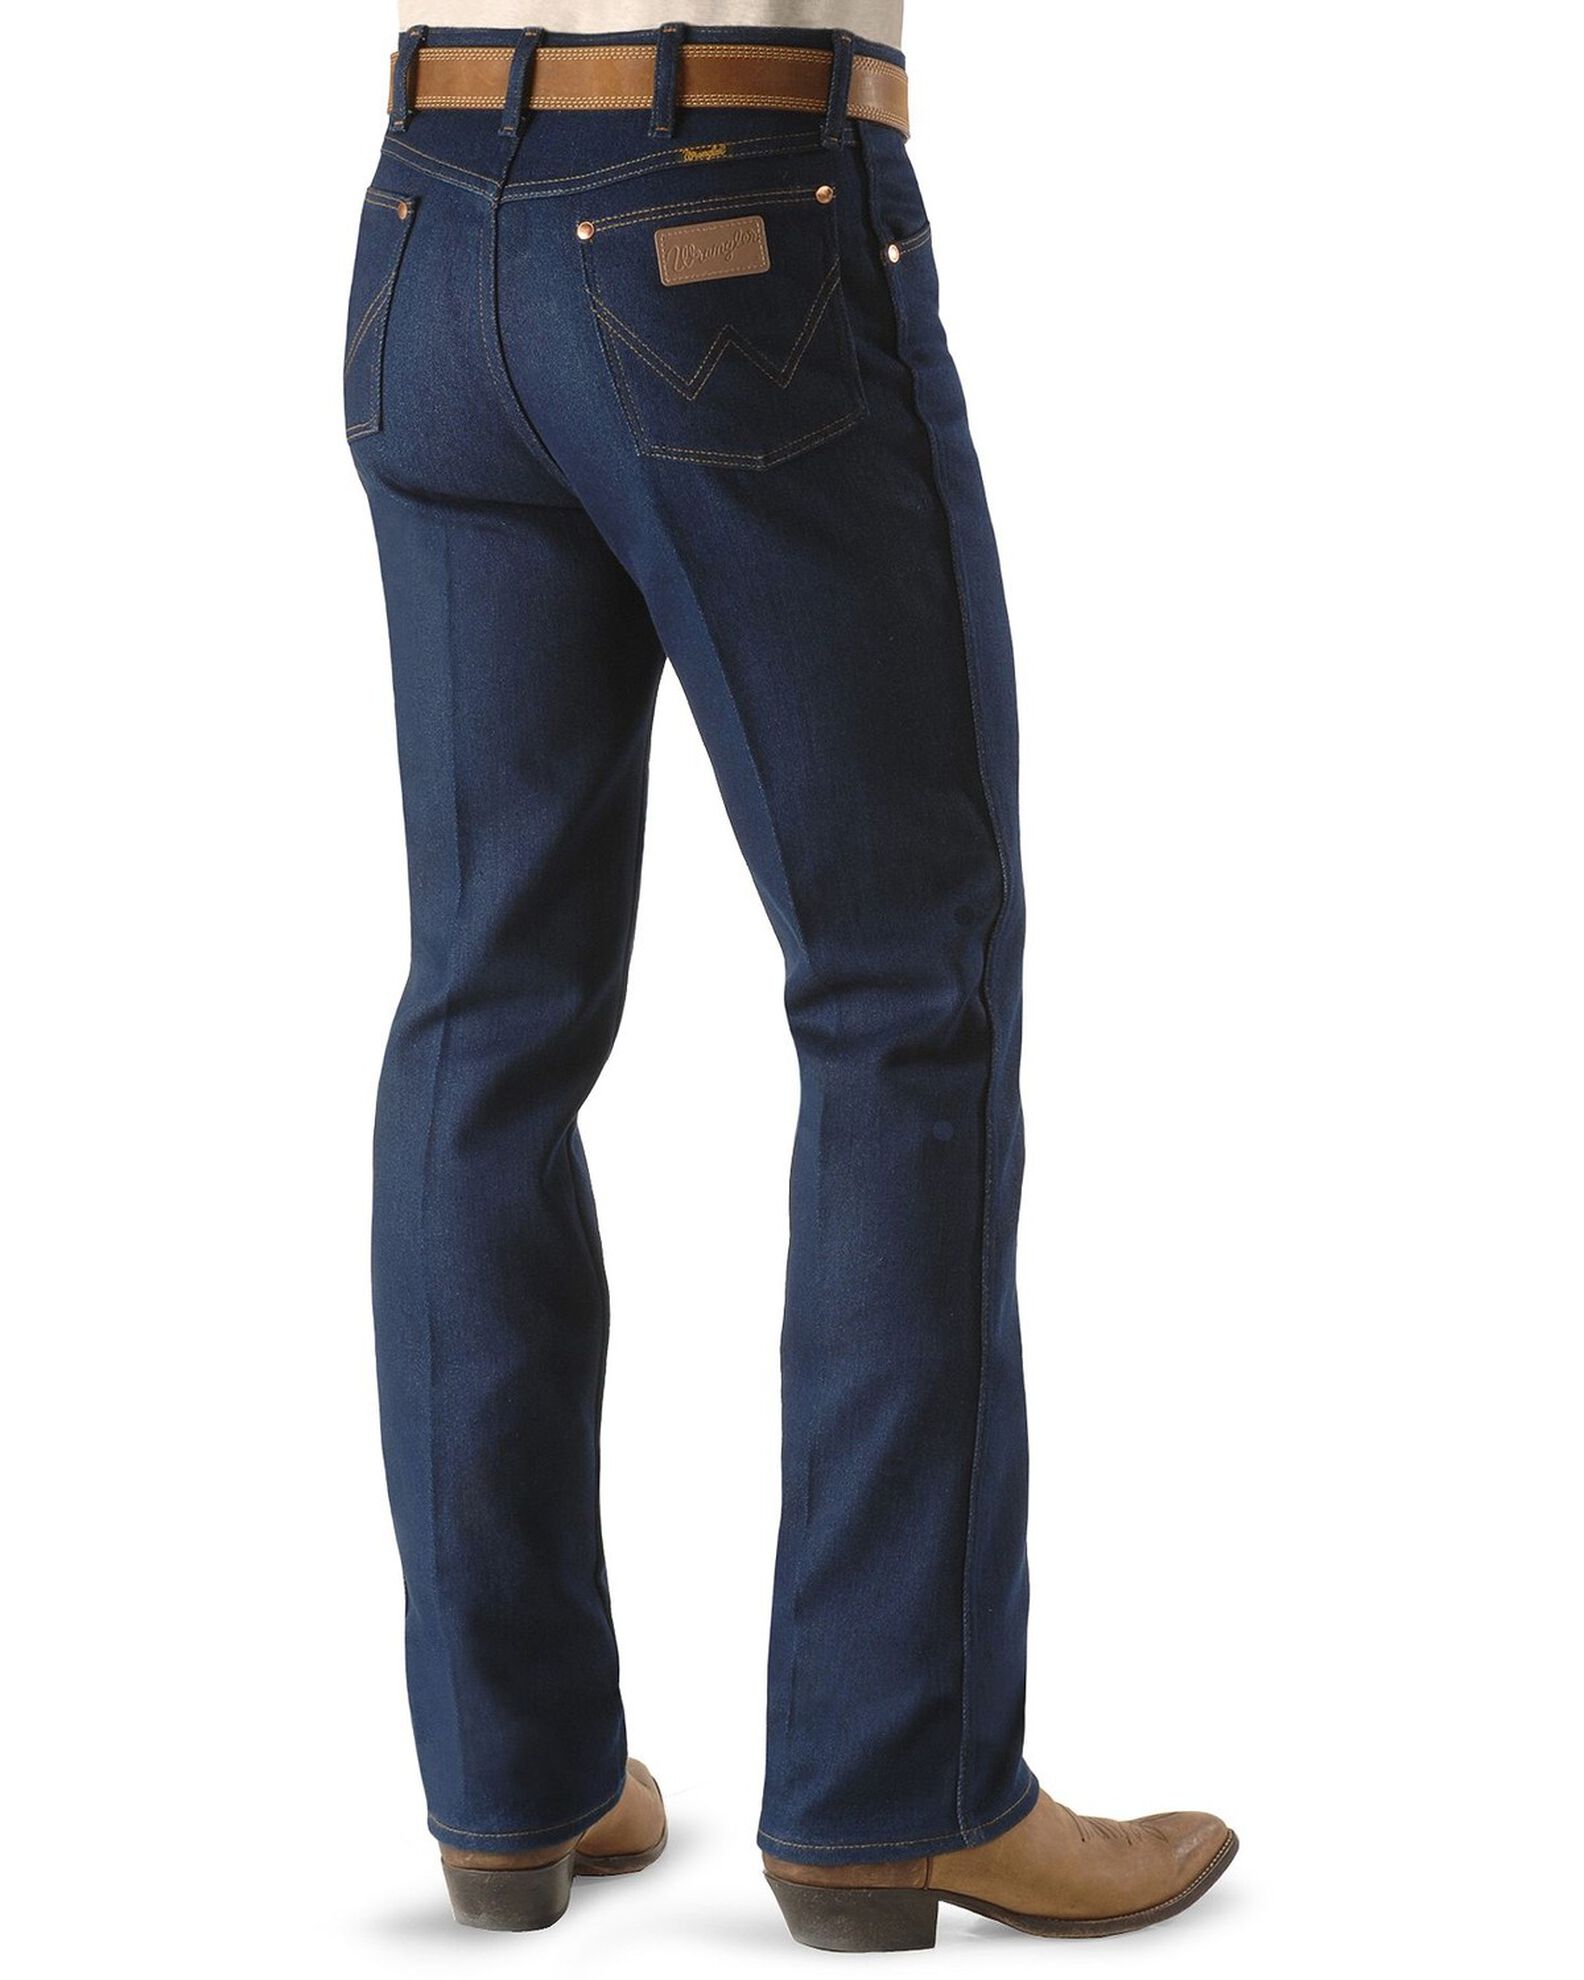 Wrangler Jeans - 947 Regular Fit Stretch - Big 44